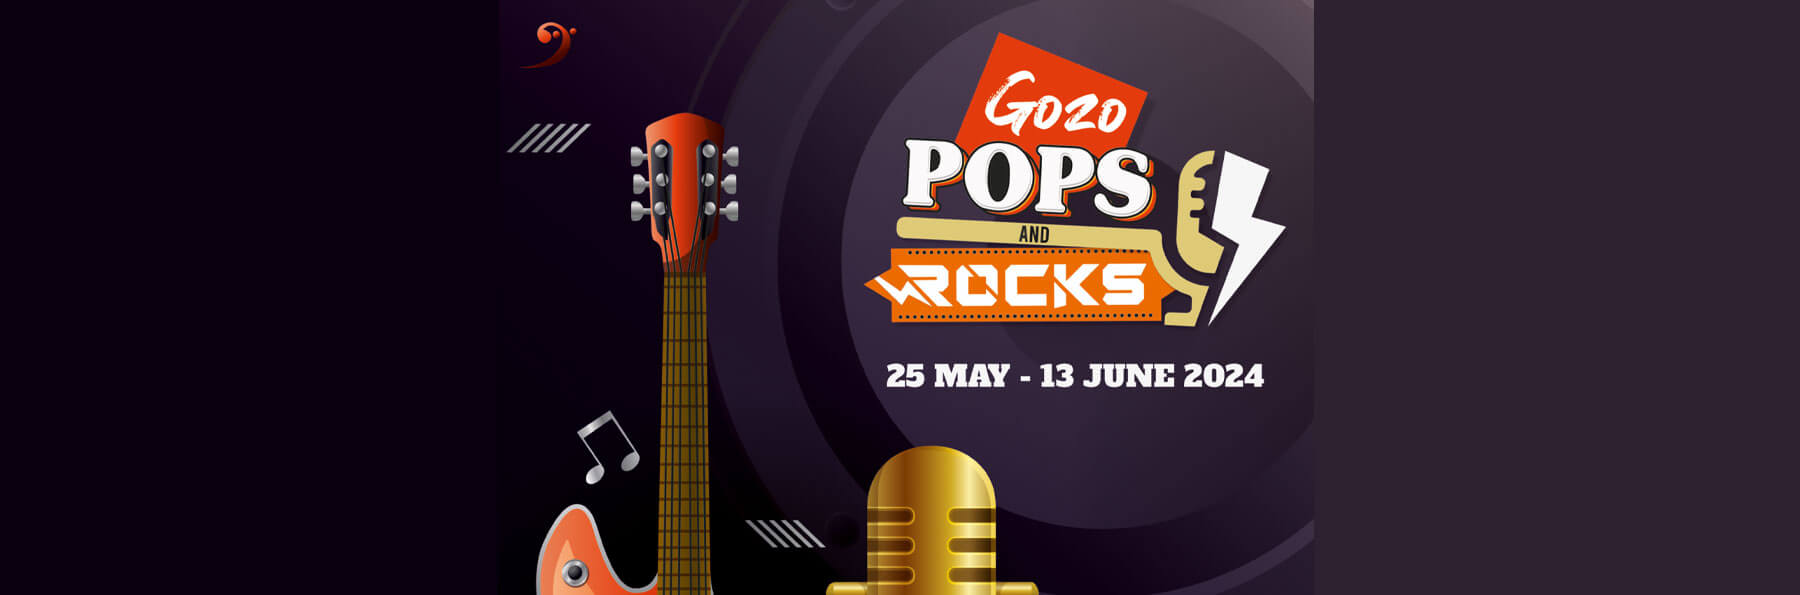 Gozo Pops & Rocks 2024